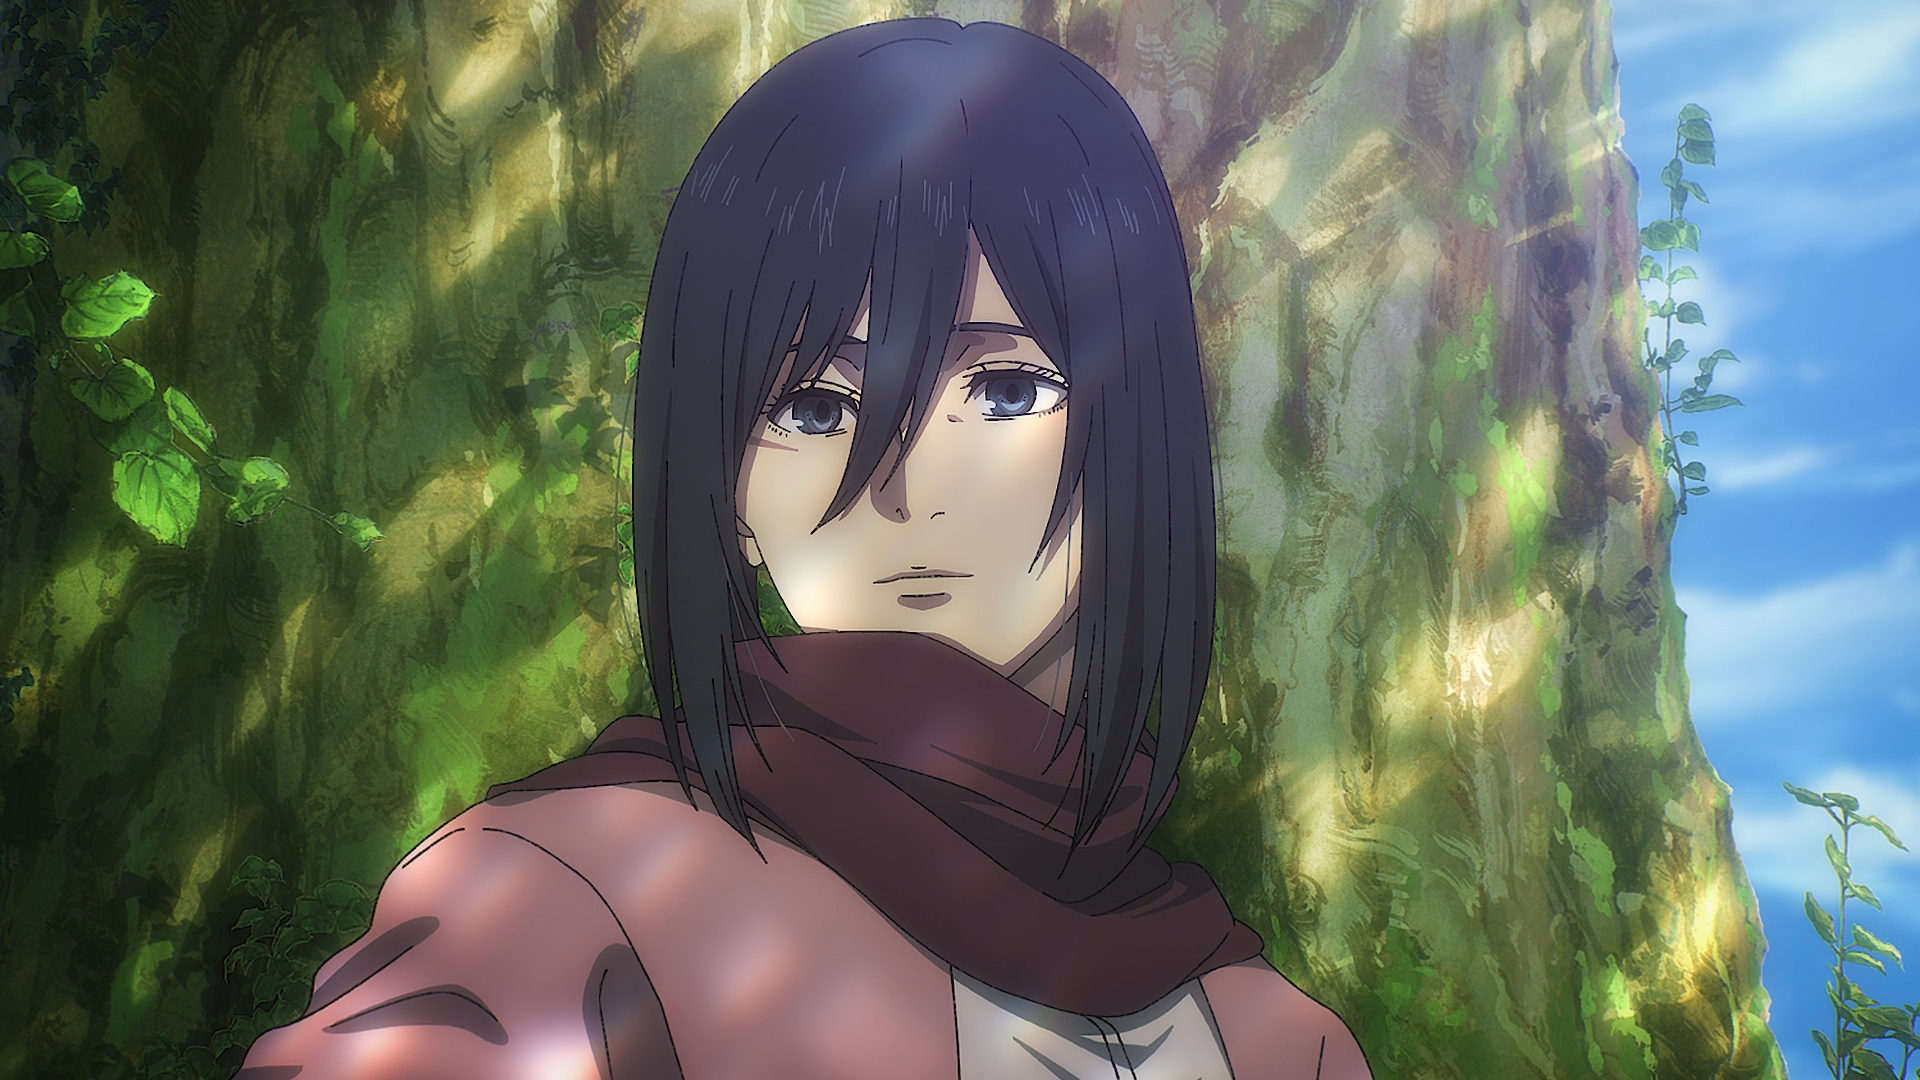 Mikasa Descobrindo que a Annie Gosta do Armin 😂 (Dublado 🇧🇷) Shingeki No  kyojin / Attack On Titan 